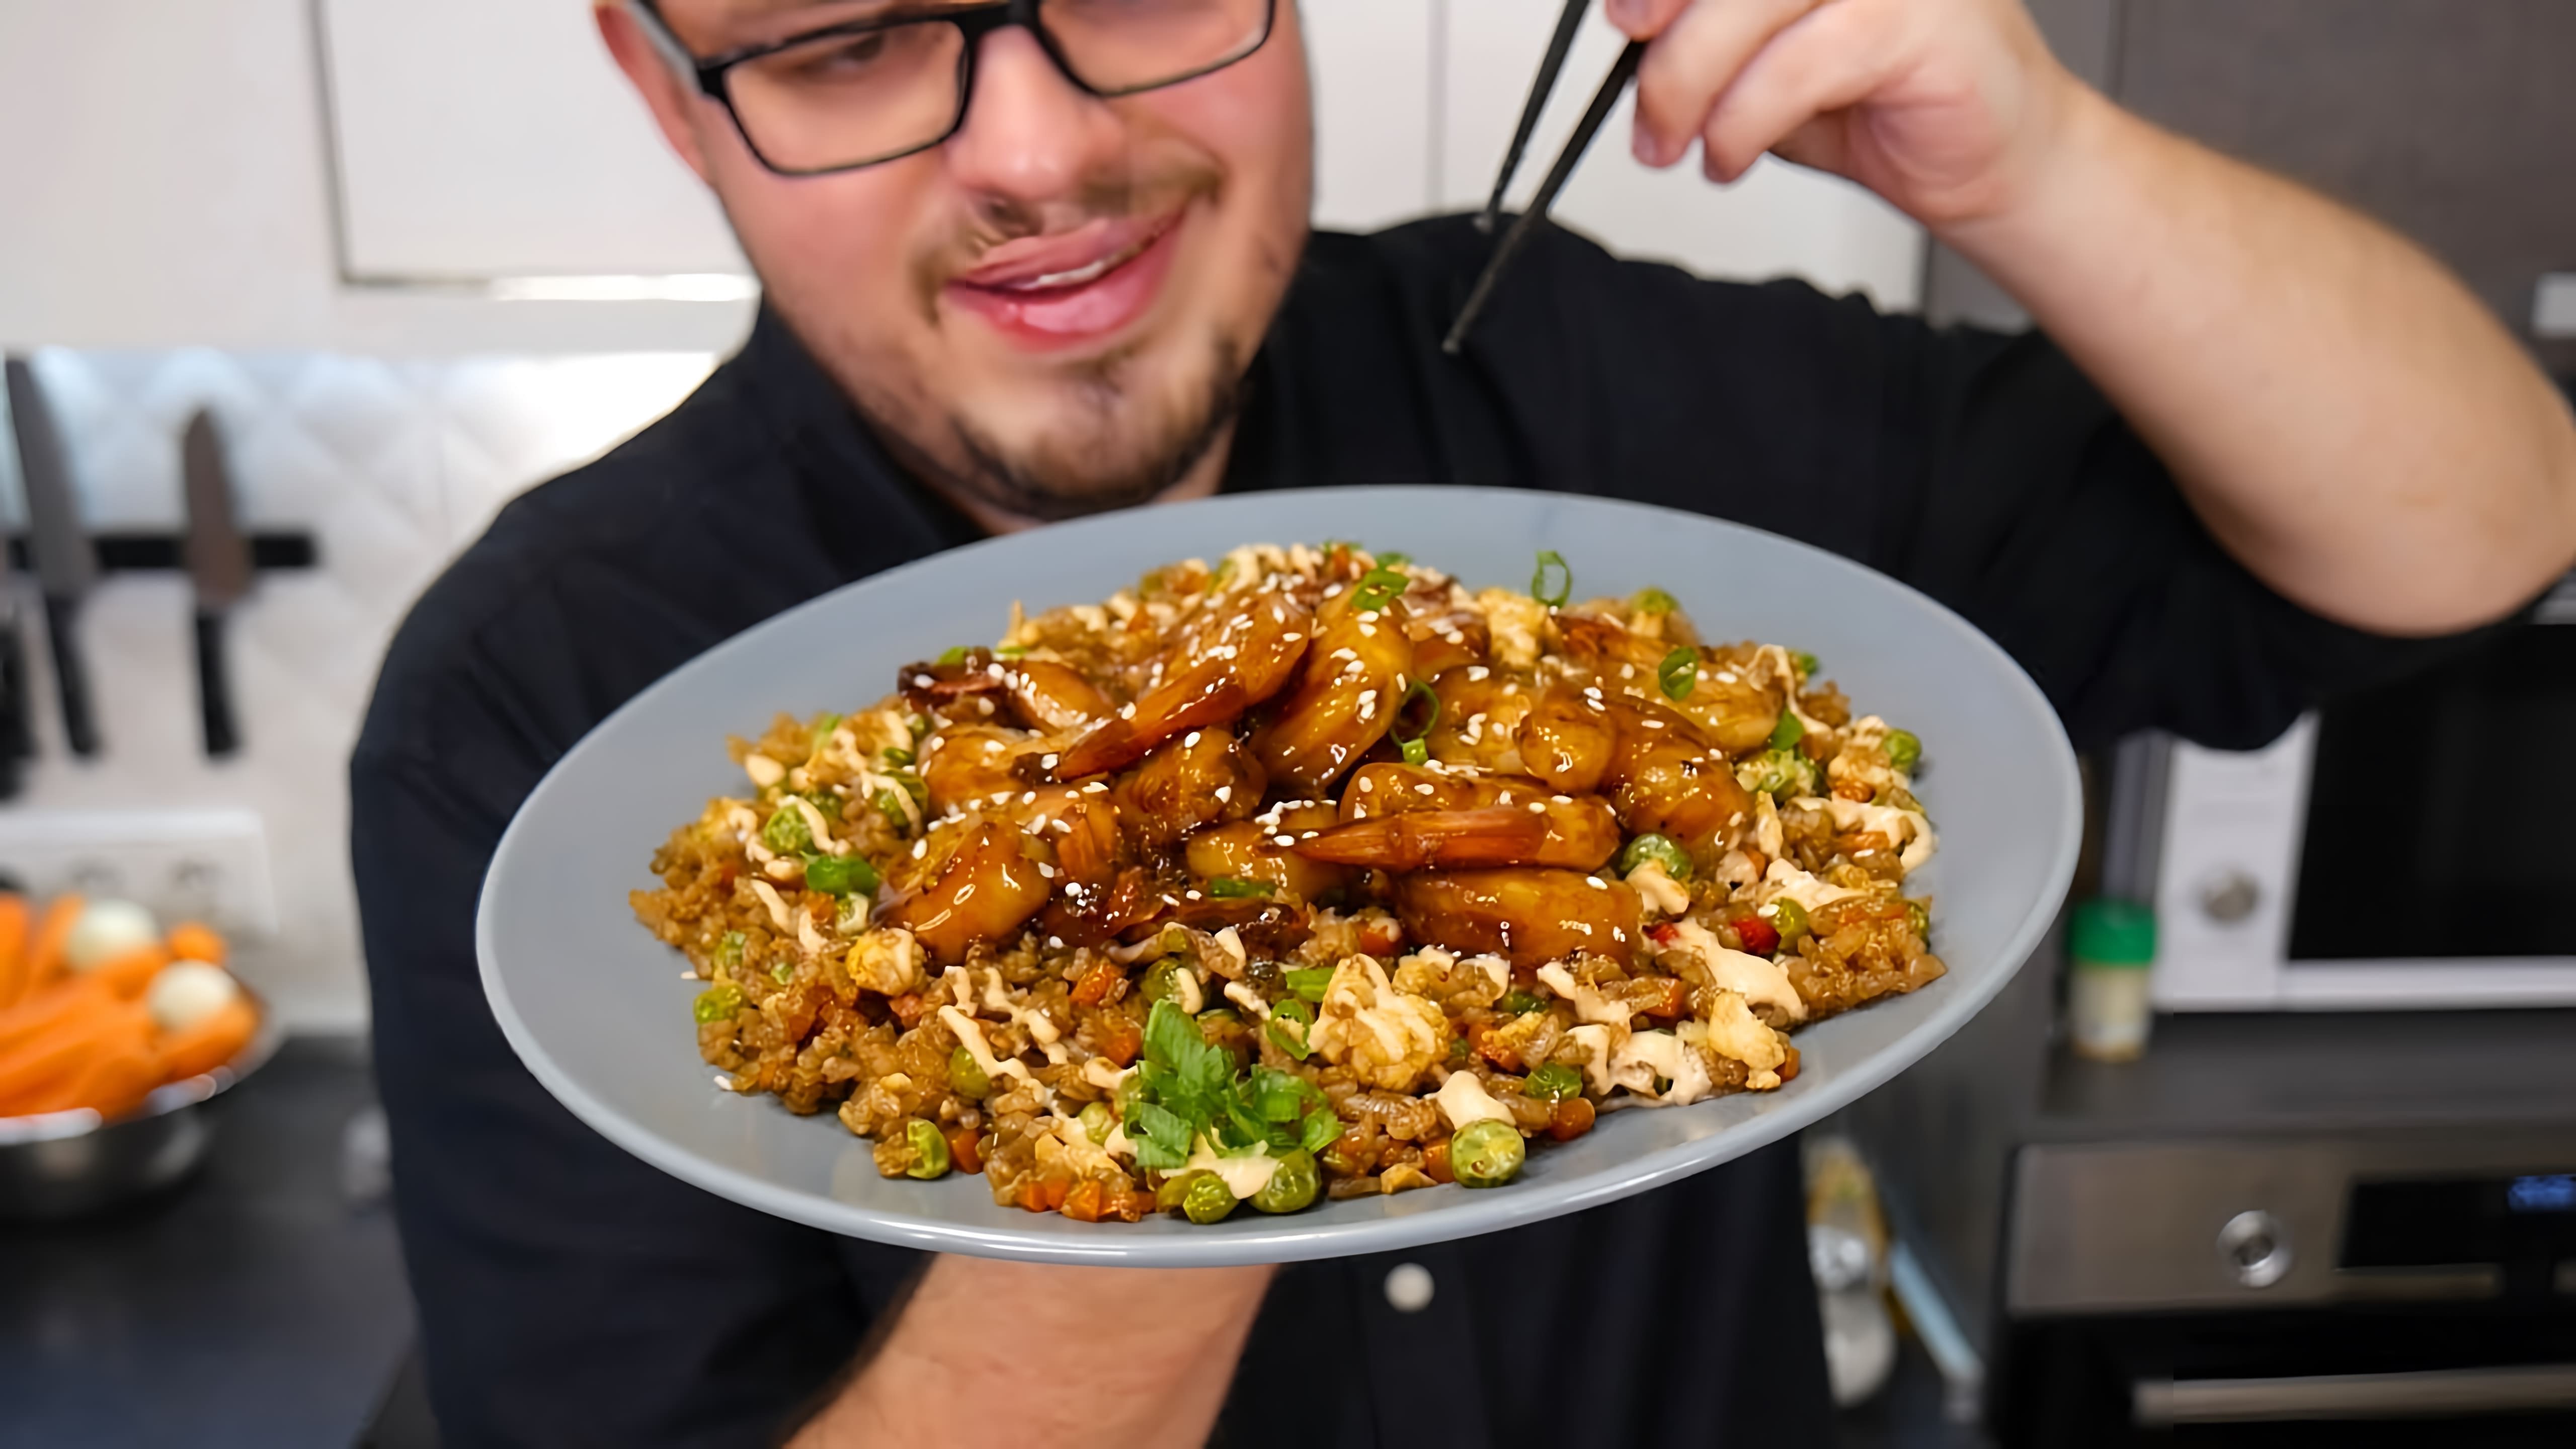 В этом видео демонстрируется процесс приготовления жареного риса с креветками, одного из любимых блюд автора